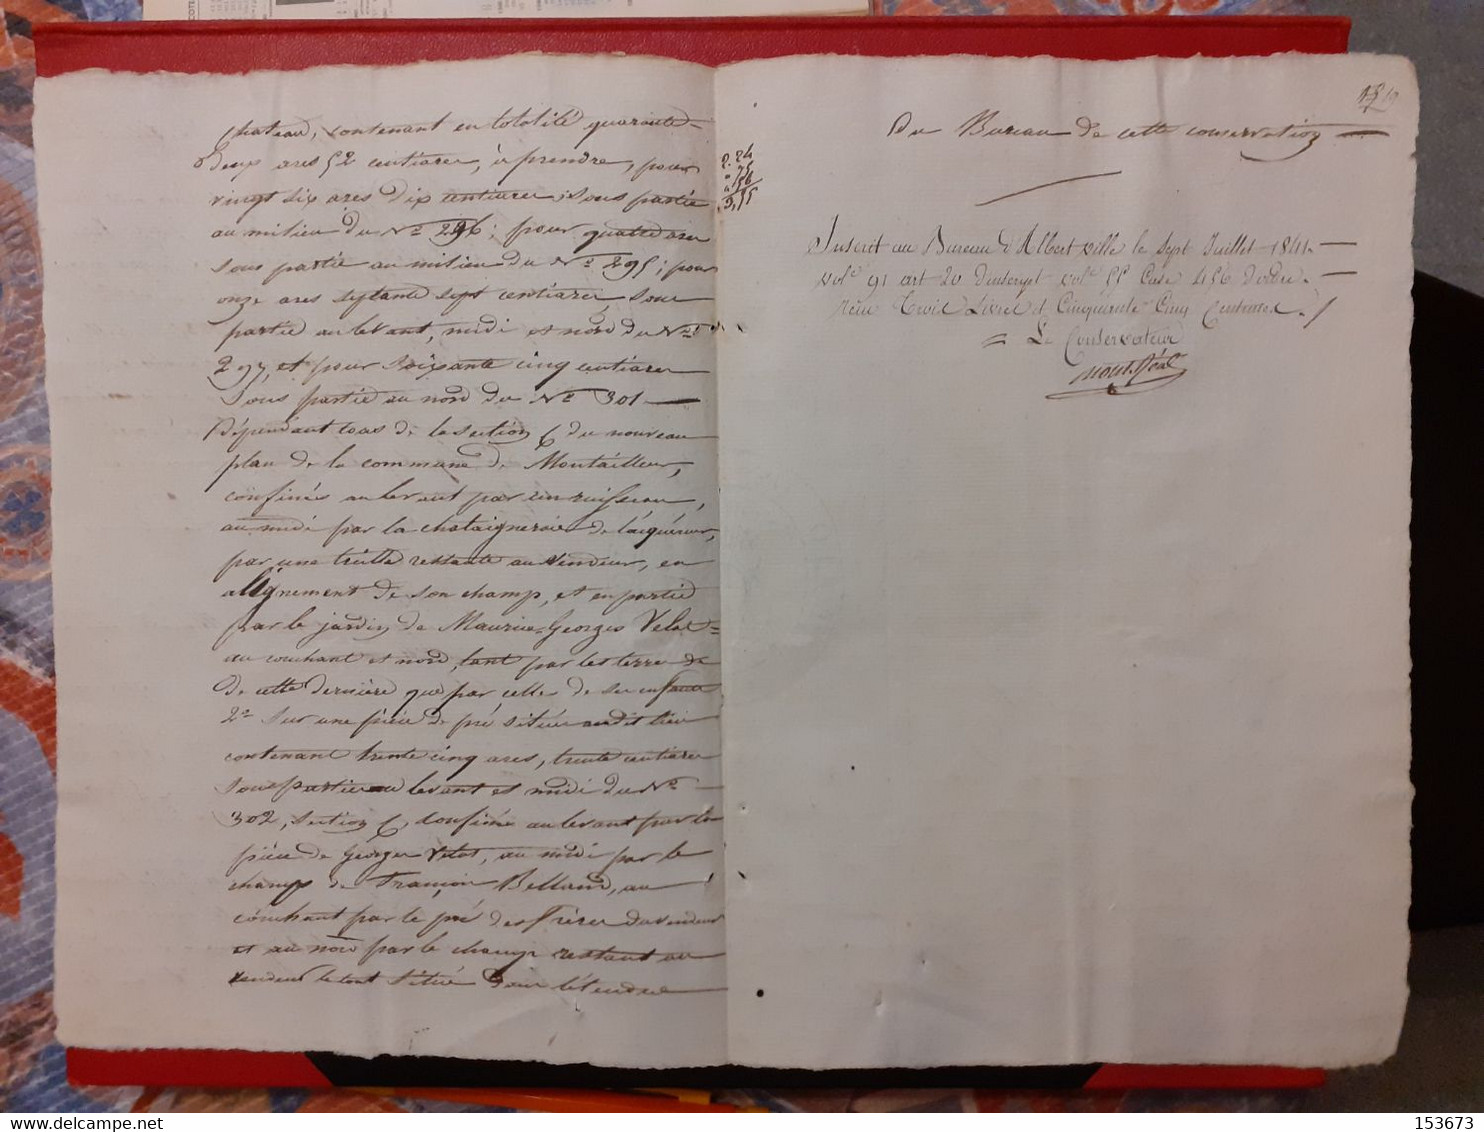 Papier Timbré Savoie 30 C.(1841) Acte Vente Terrains Montailleur/Plancherine Entre FAVRE Et VELAT 1835 - Gresy Sur Isere